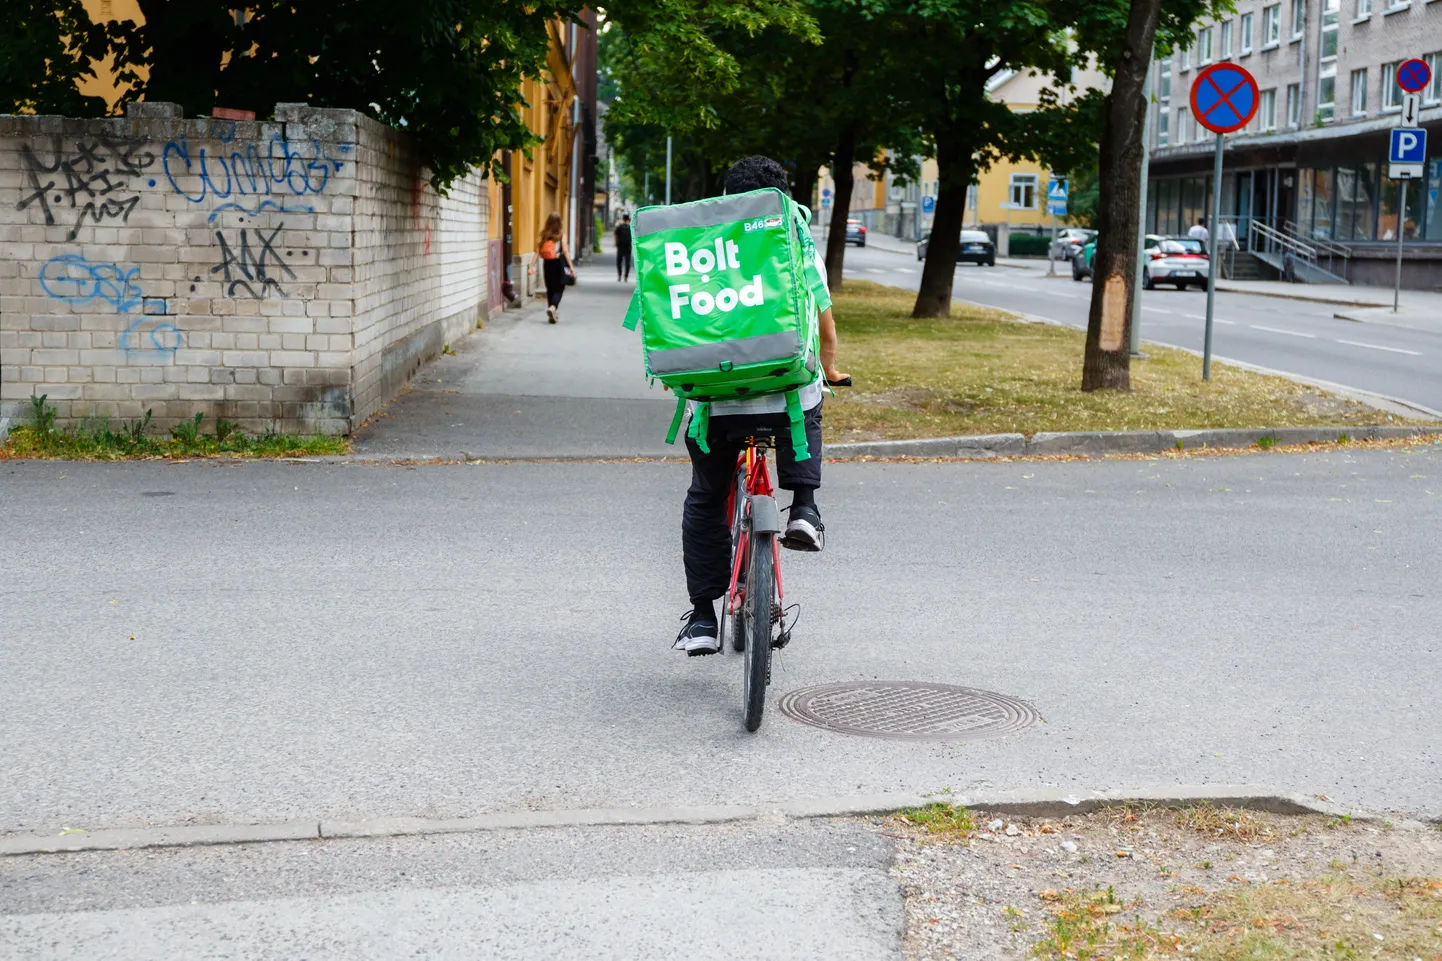 Bolt Food kullerid tegutsemas Tallinna kesklinnas. Pilt on illustreeriv.